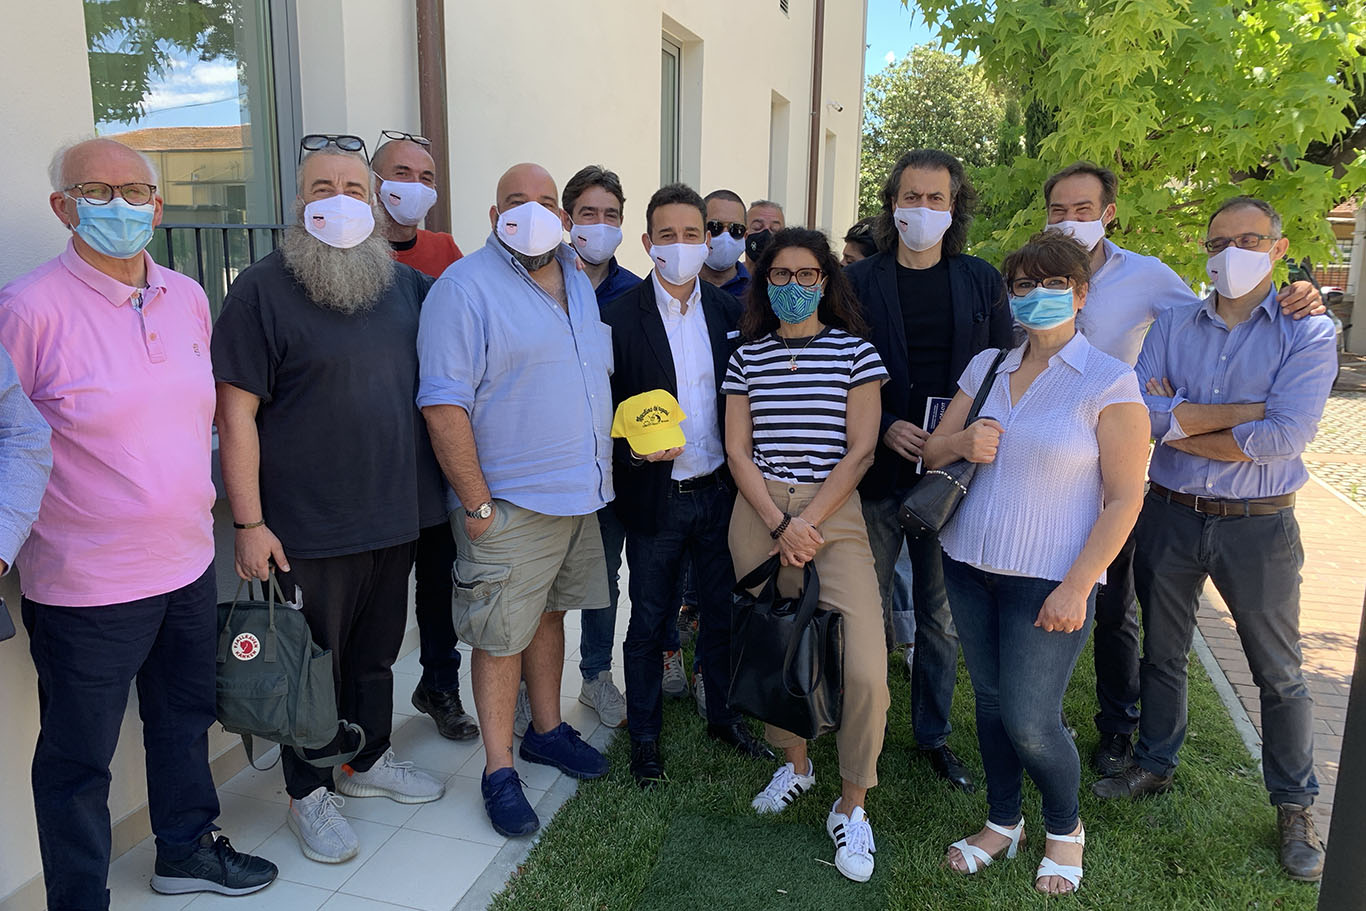 Il Gruppo “Porky’s”, gli amici di Michele Costagliola, donano aspiratori per trachea all’associazione Scudo